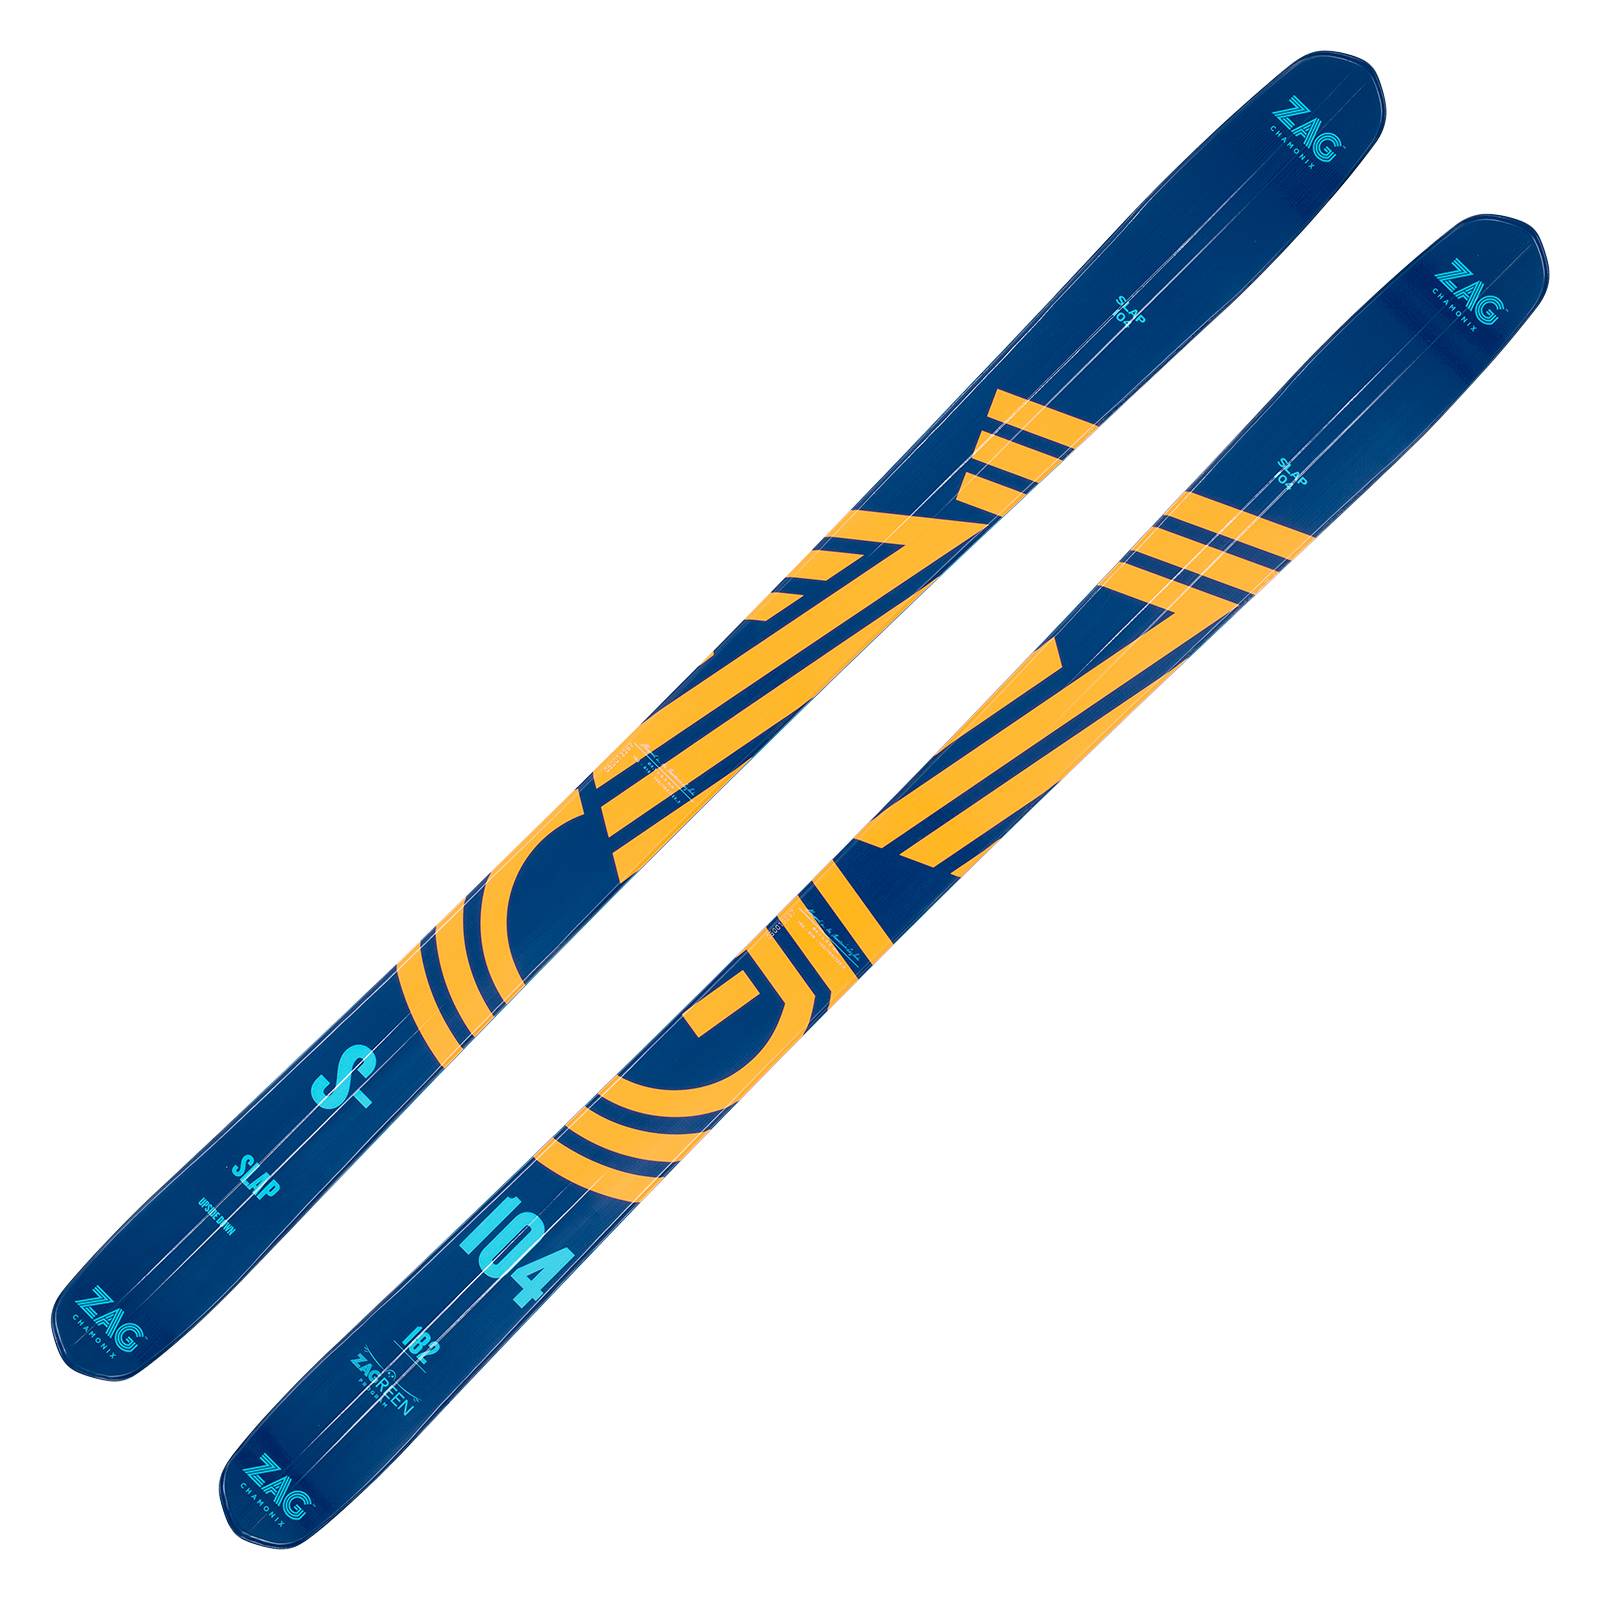 ZAG SLAP 104 Freeride Ski 2022/23